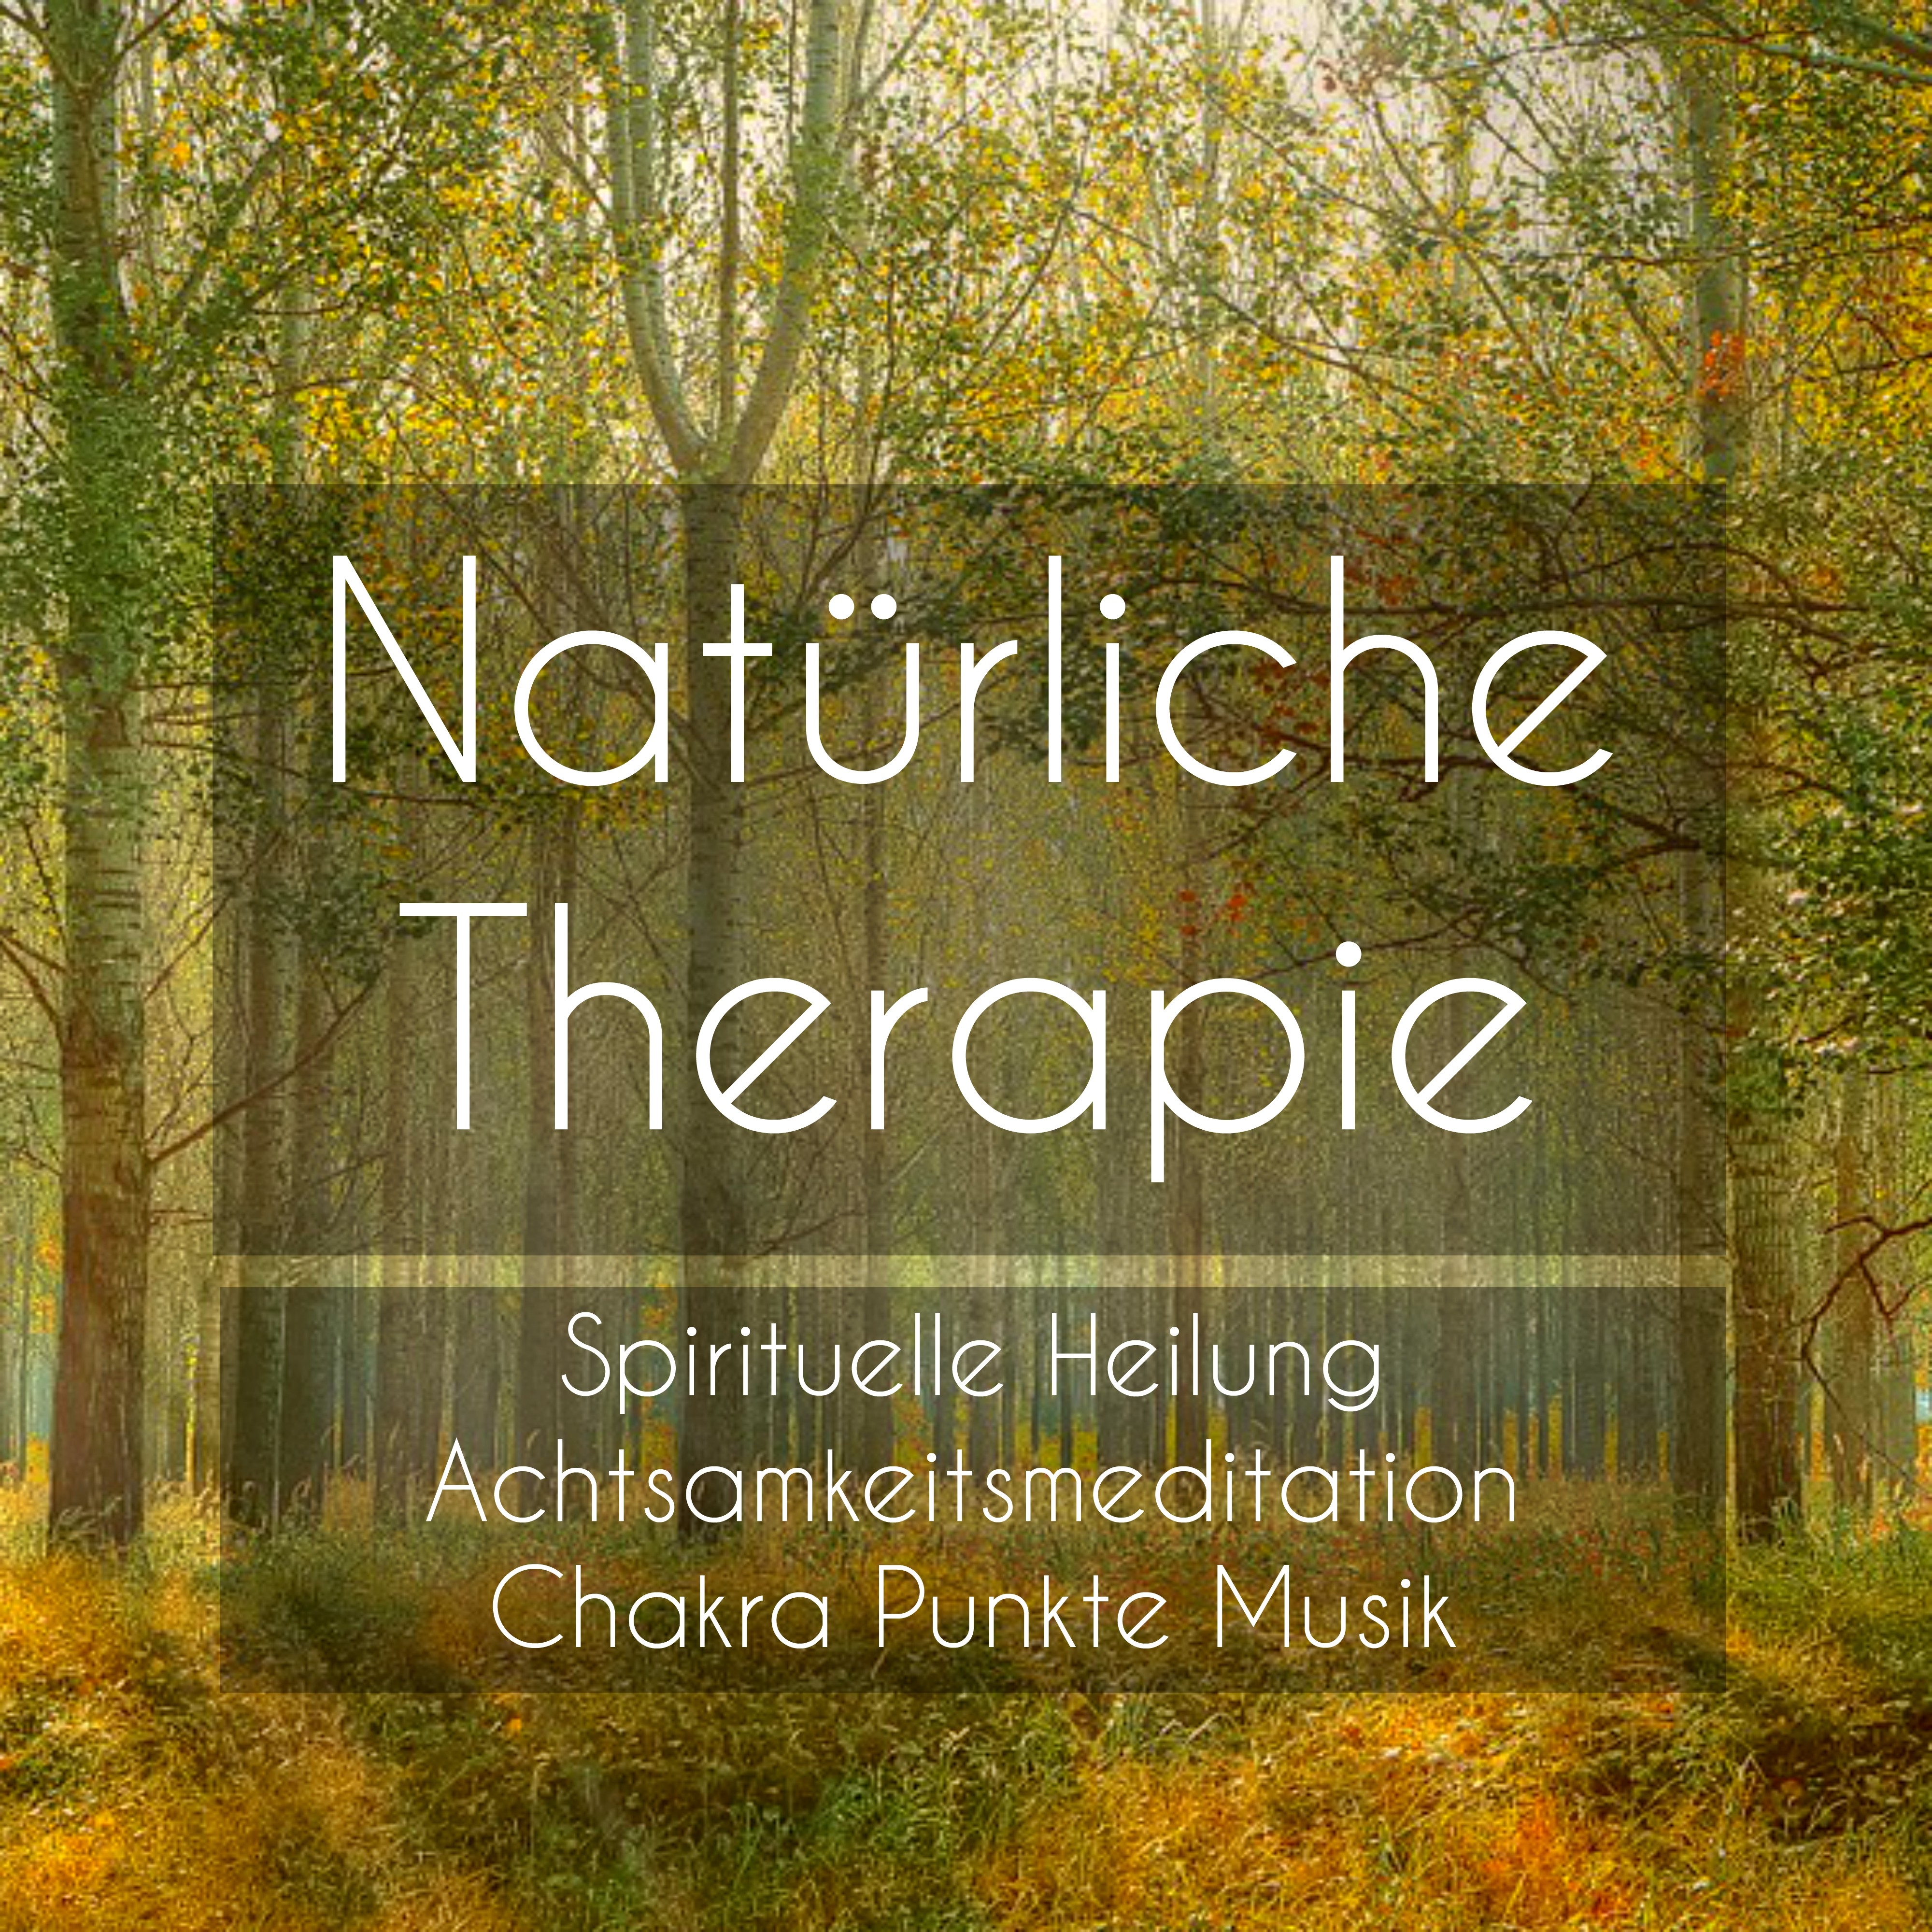 Natürliche Therapie - Spirituelle Heilung Achtsamkeitsmeditation Chakra Punkte Musik mit Binaurale New Age Entspannende Geräusche